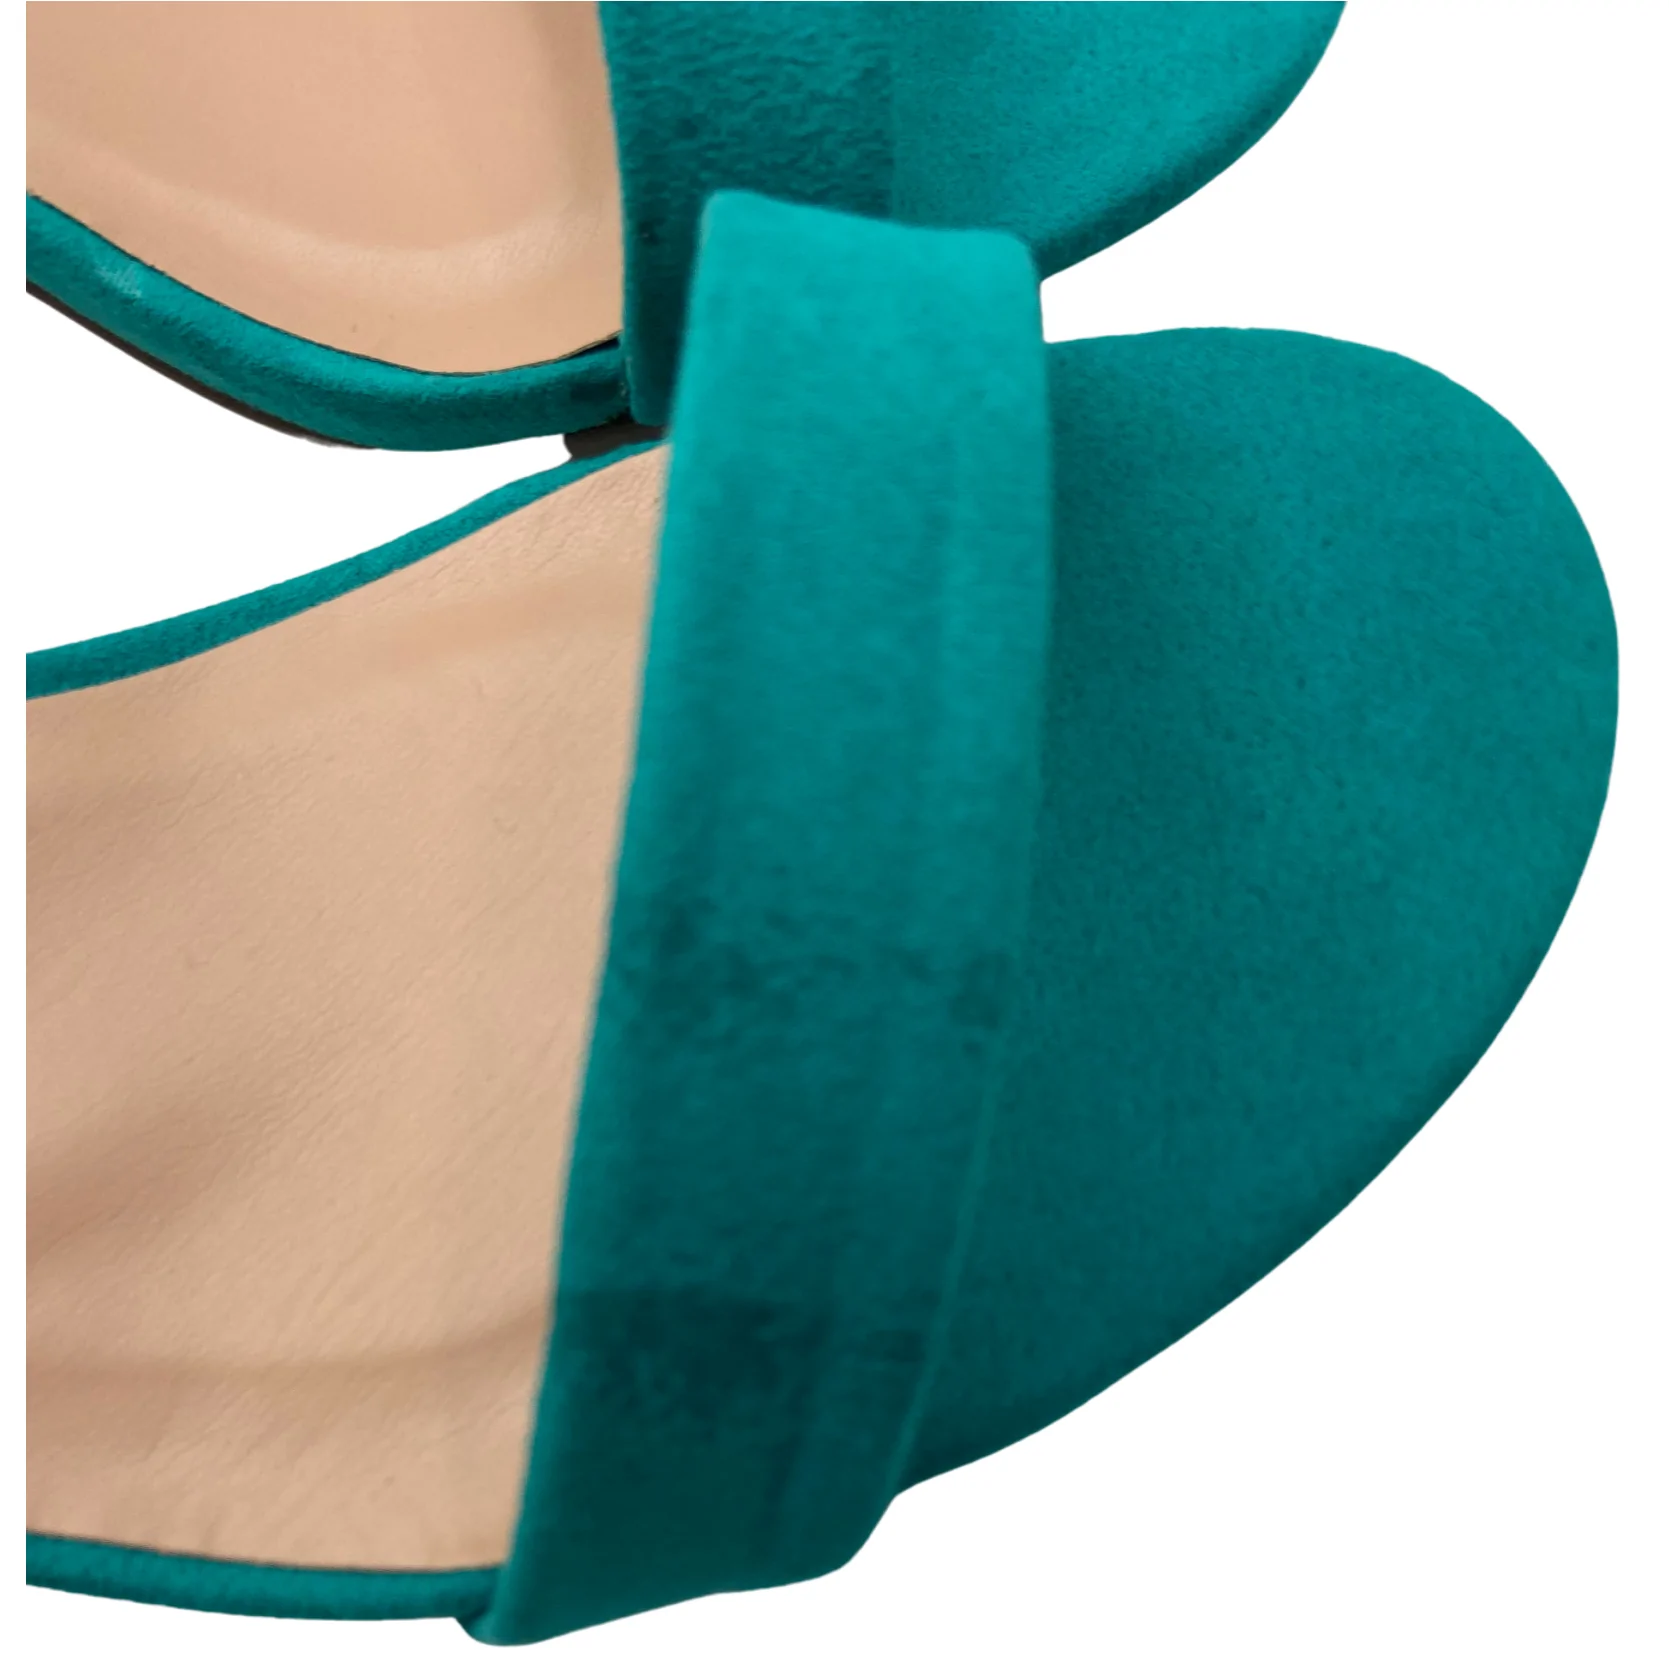 JustFab Women's High Heels / Vivica / Green / 3" Heel / Size 7.5